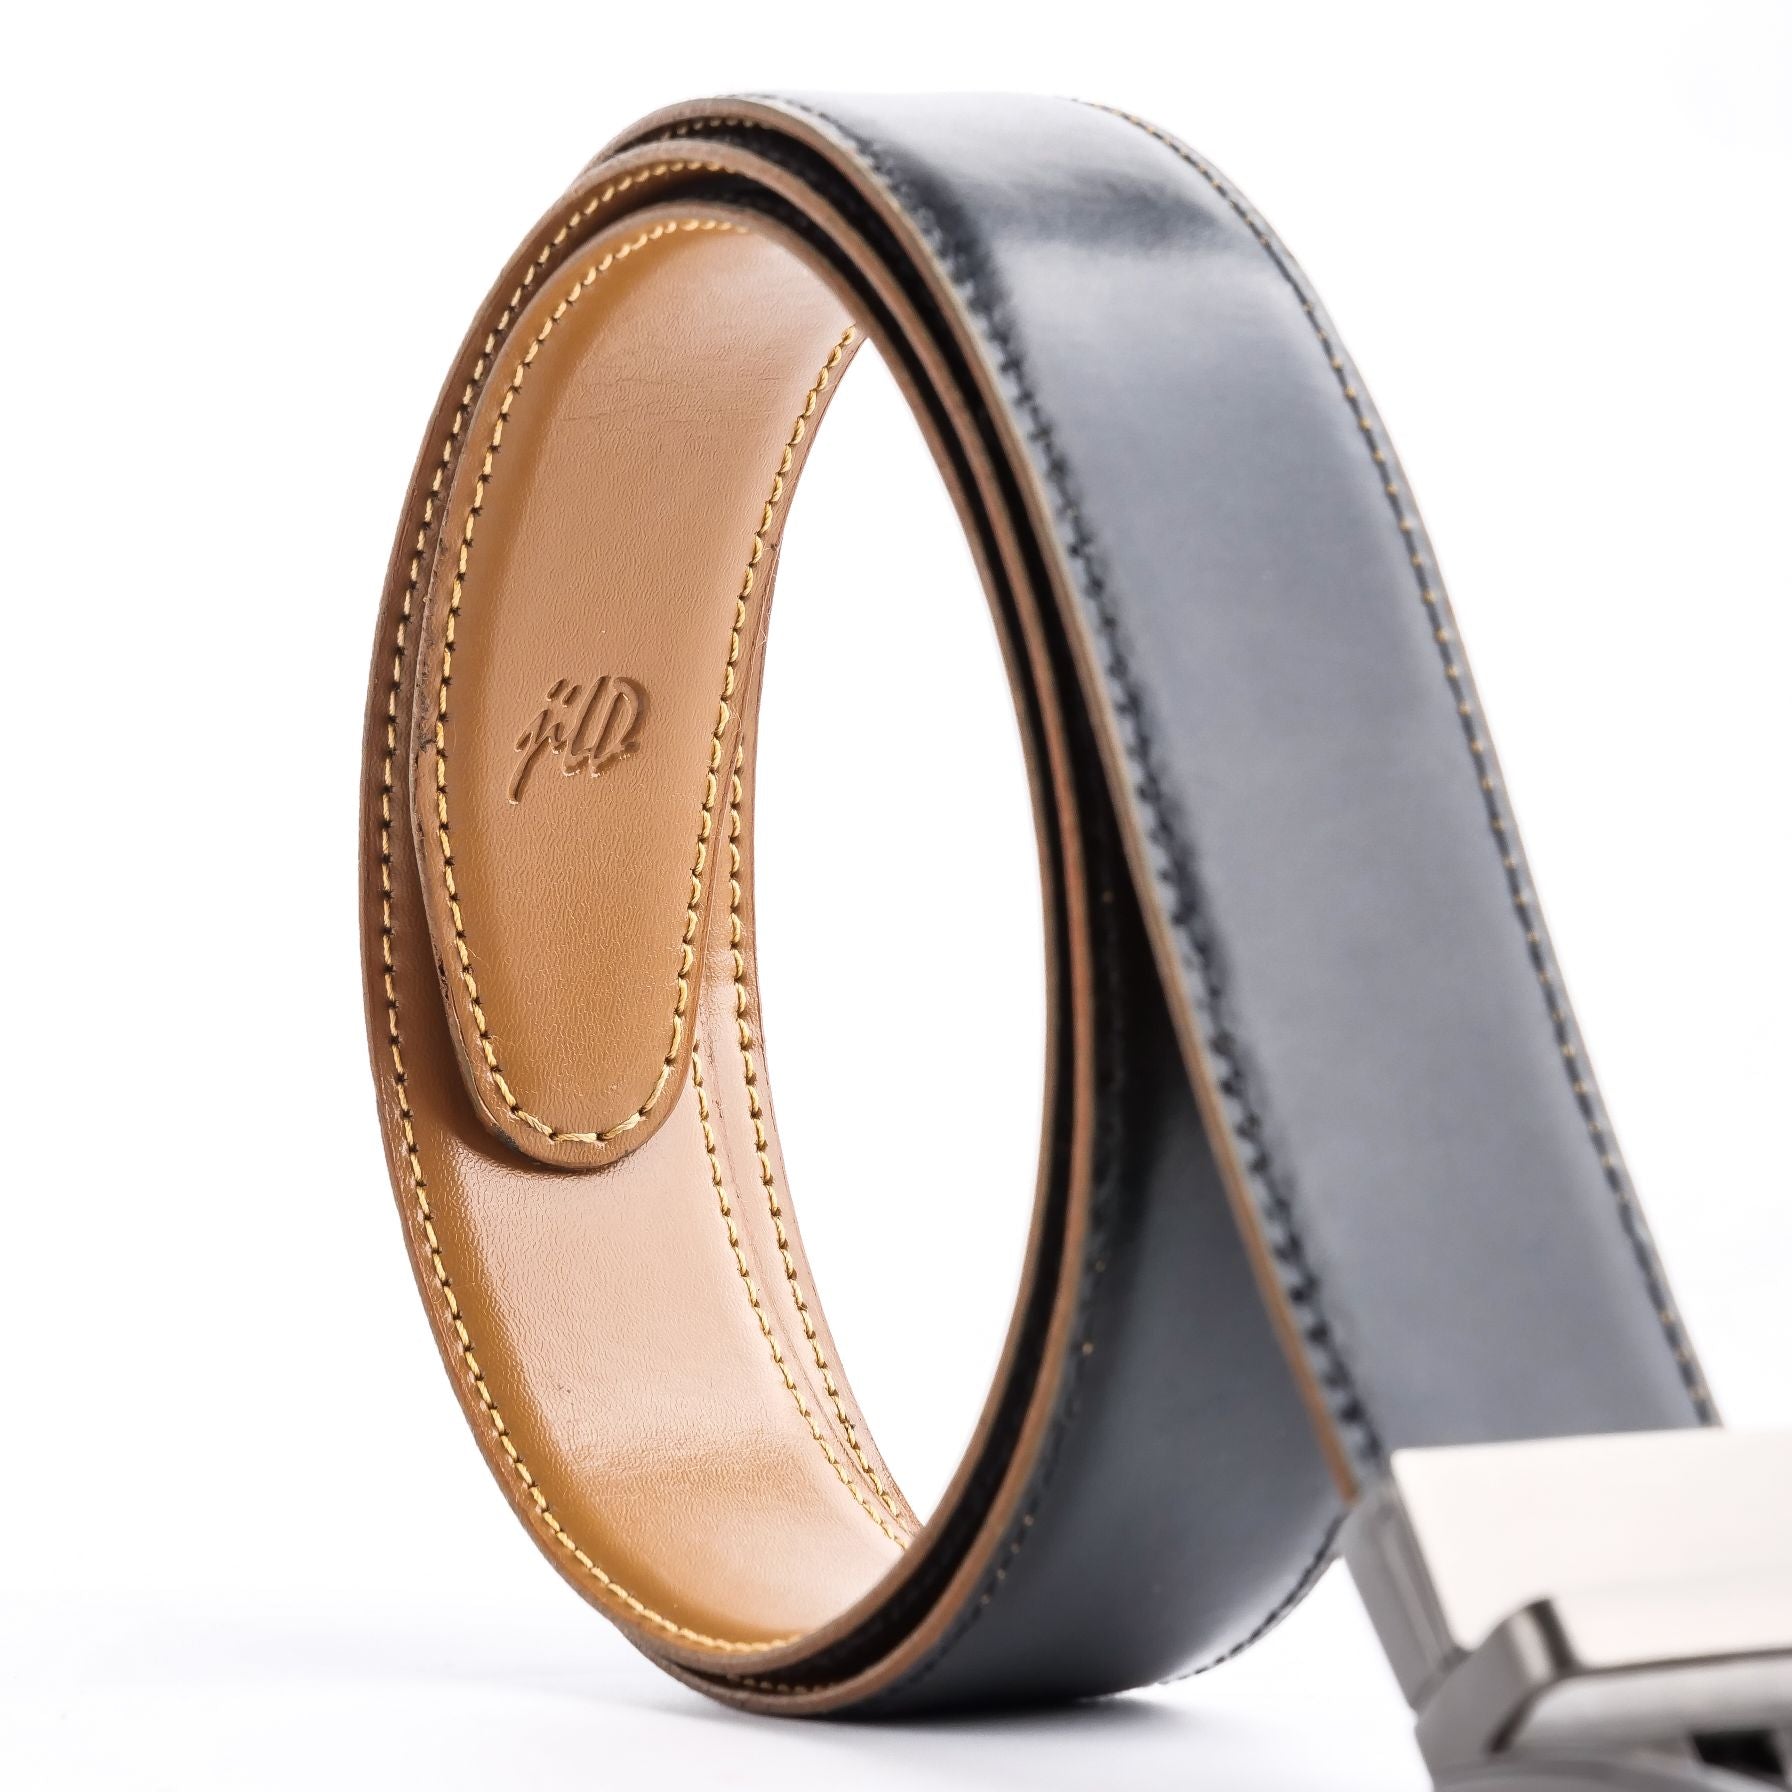 Chromium Double Sided Reversible Men's' Leather Belt-BLACK TAN BRN